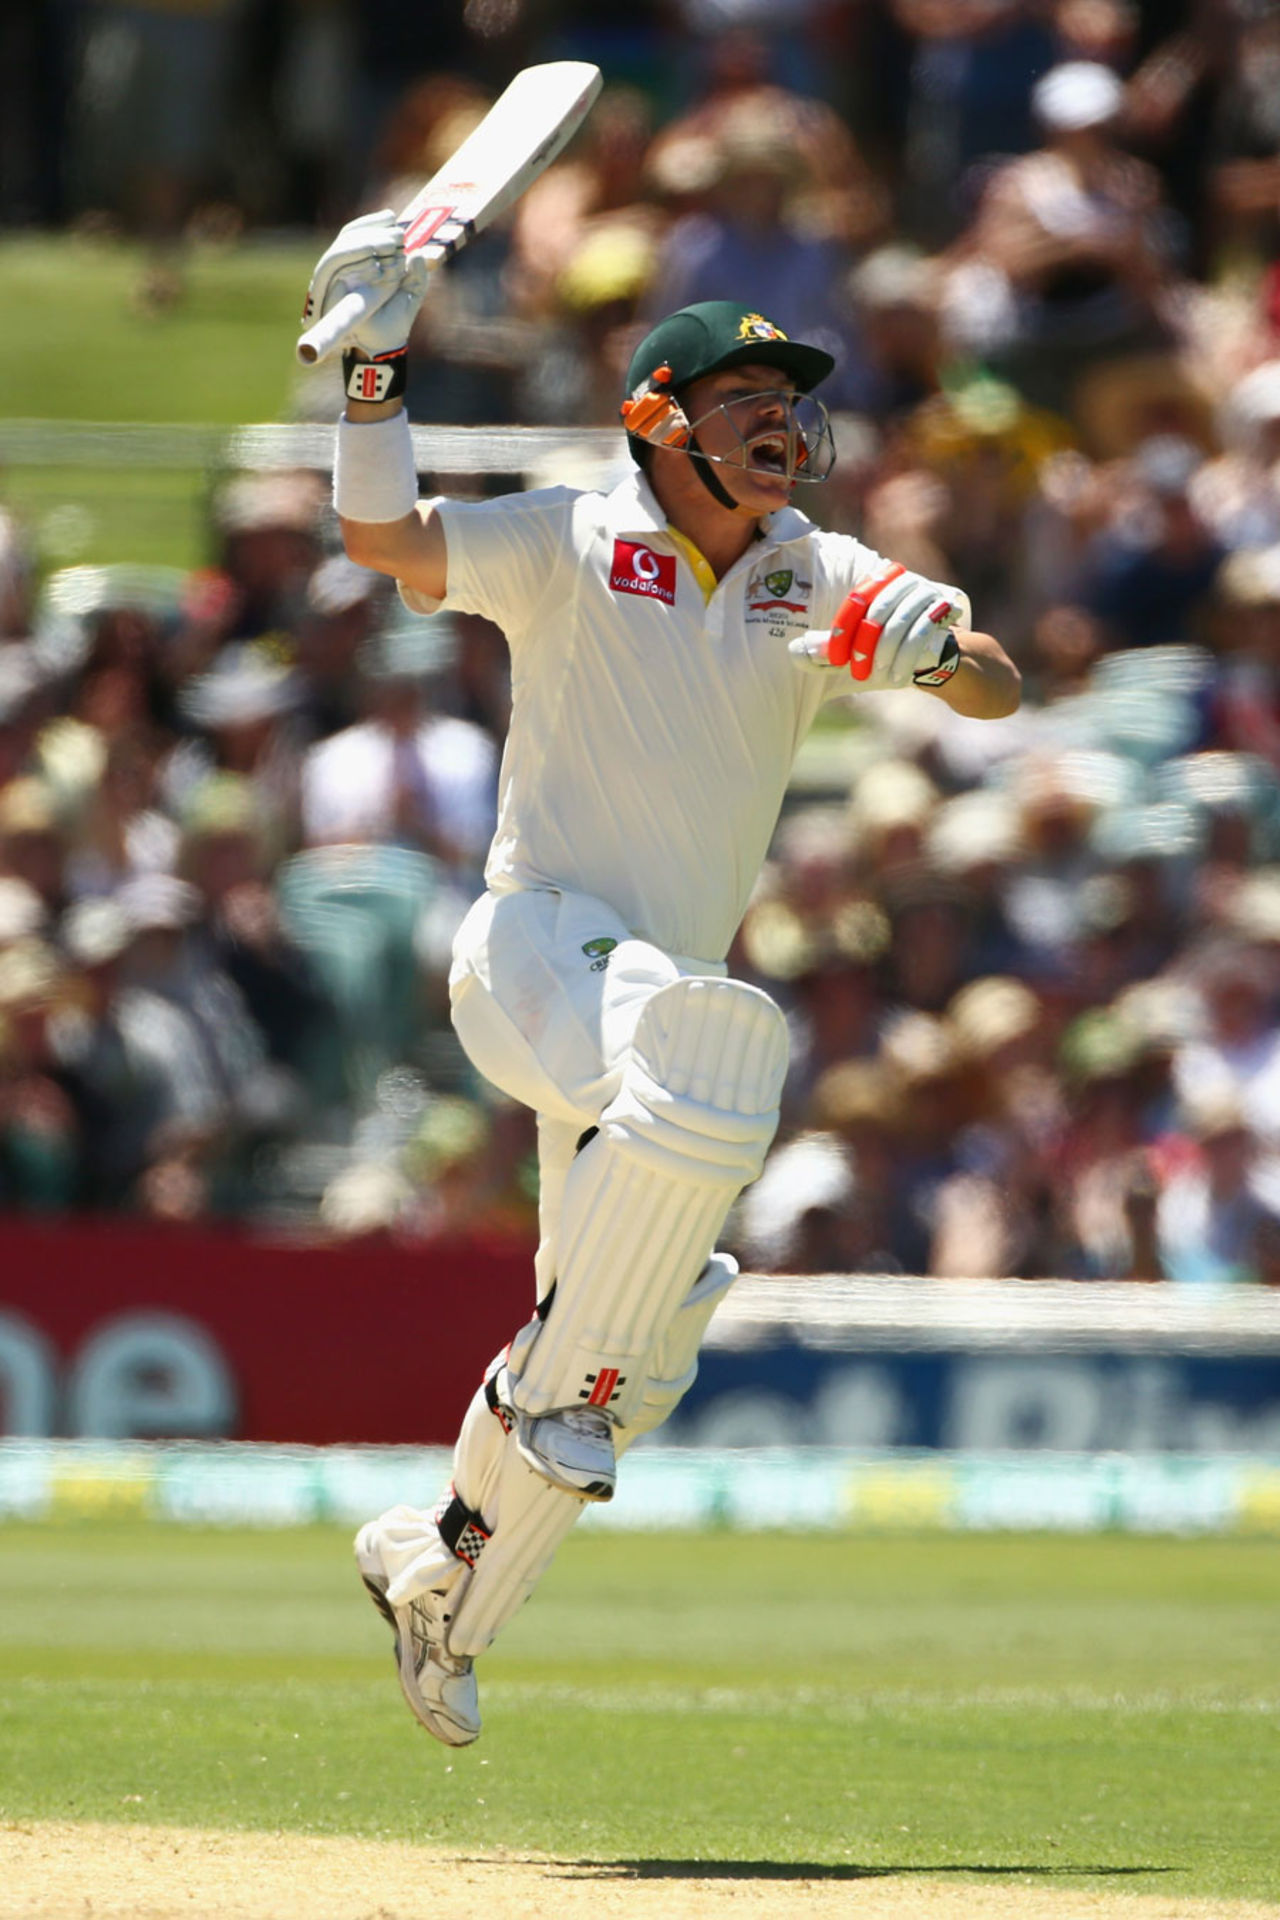 David Warner jumps for joy after his century, Australia v South Africa, 2nd Test, Adelaide, 1st day, November 22, 2012